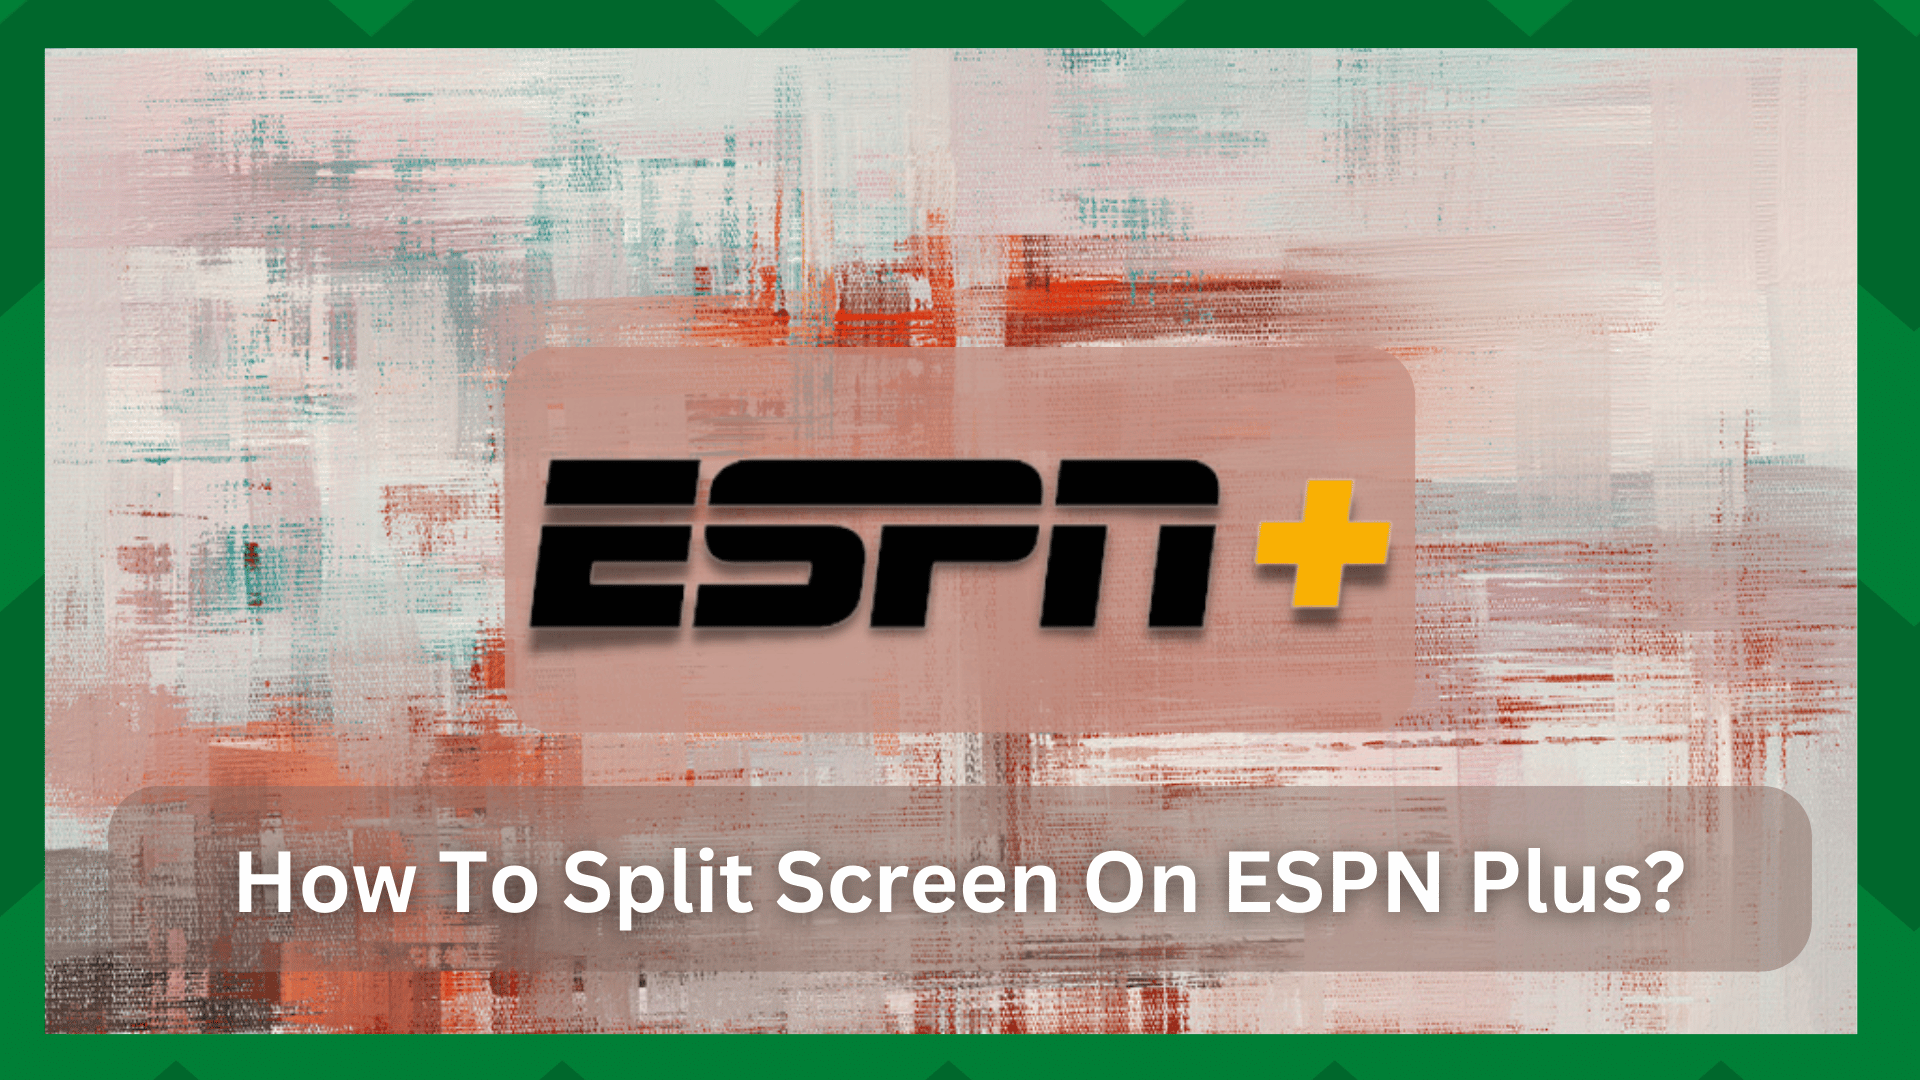 Kaip padalyti ekraną "ESPN Plus"? (2 būdai)